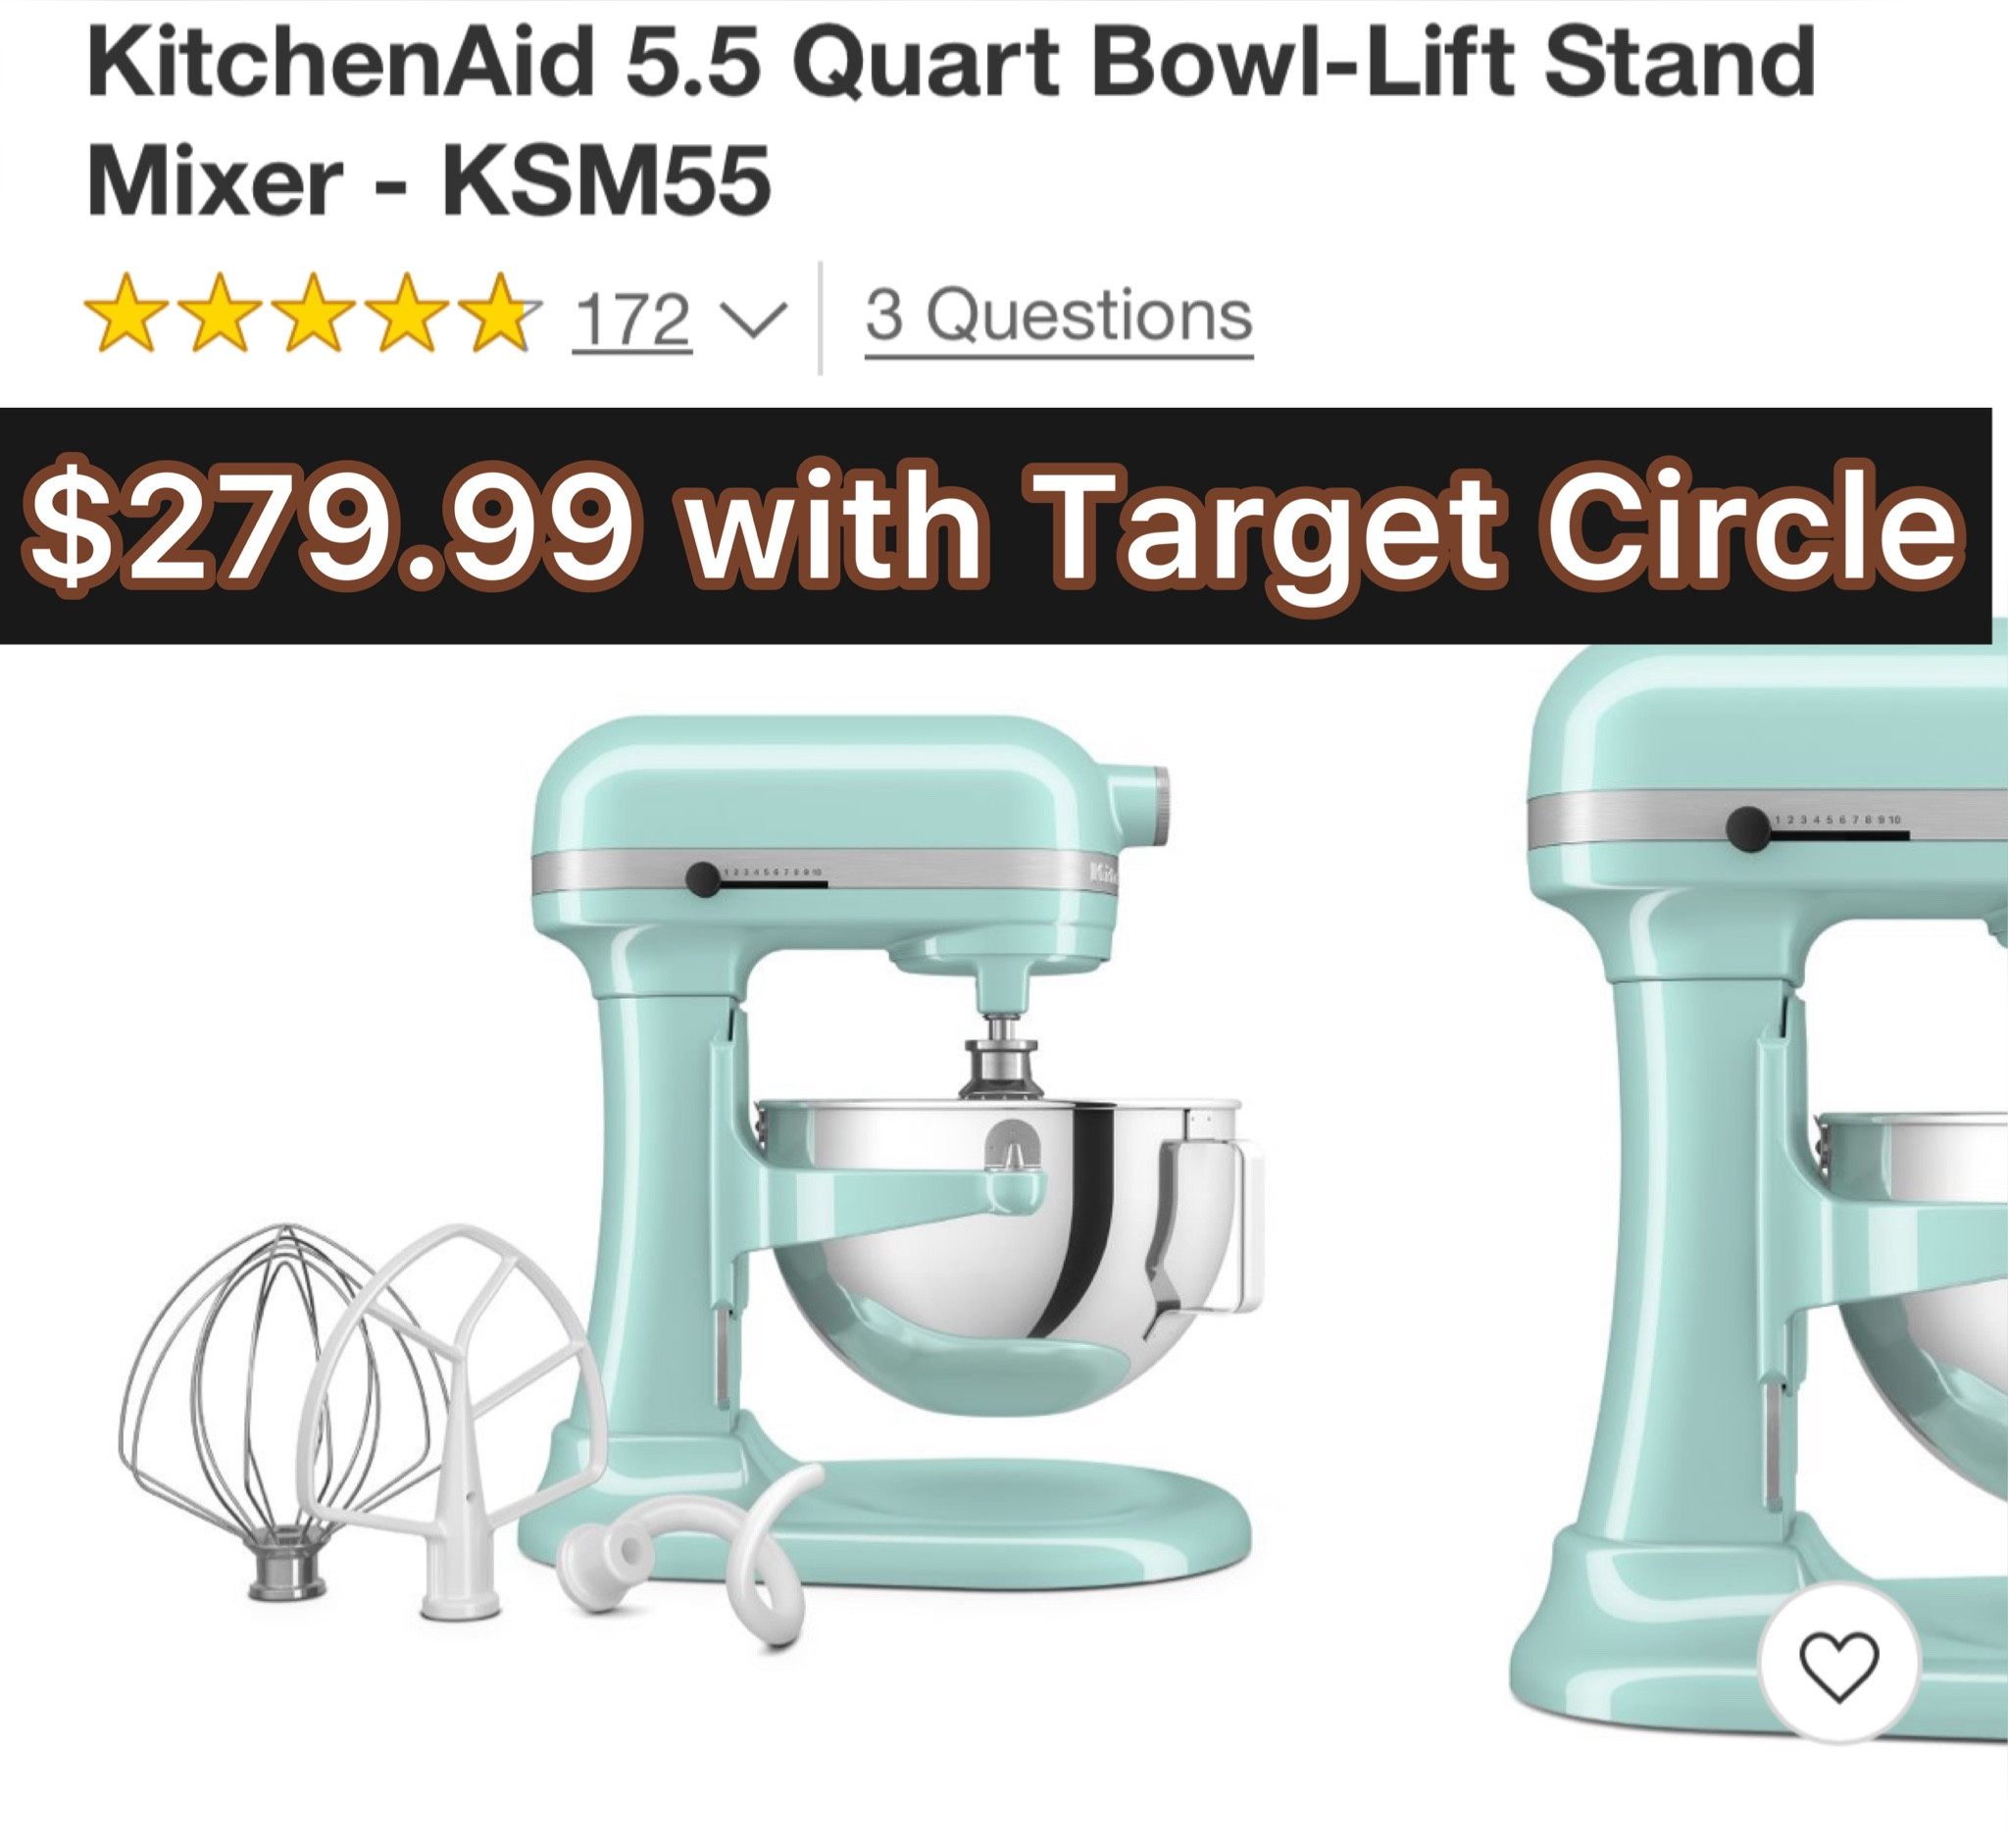 KitchenAid 5.5-Quart Bowl-Lift Stand Mixer